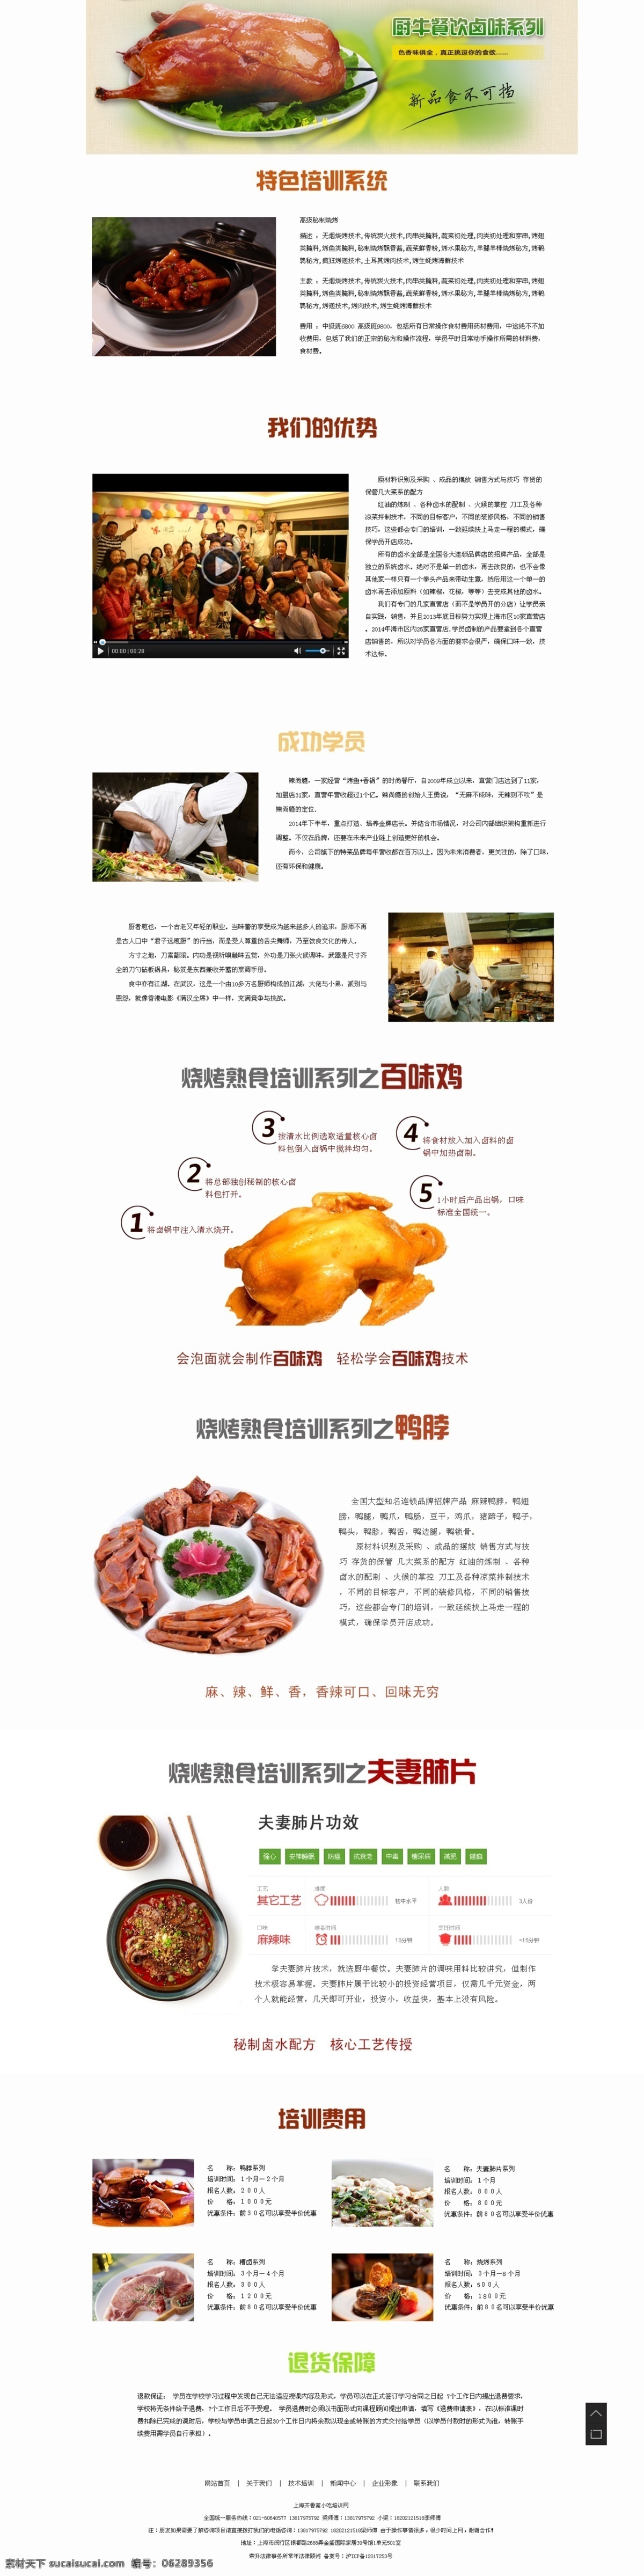 厨牛餐饮系类 网页 效果图 模板下载 餐饮 餐饮网站模板 白色